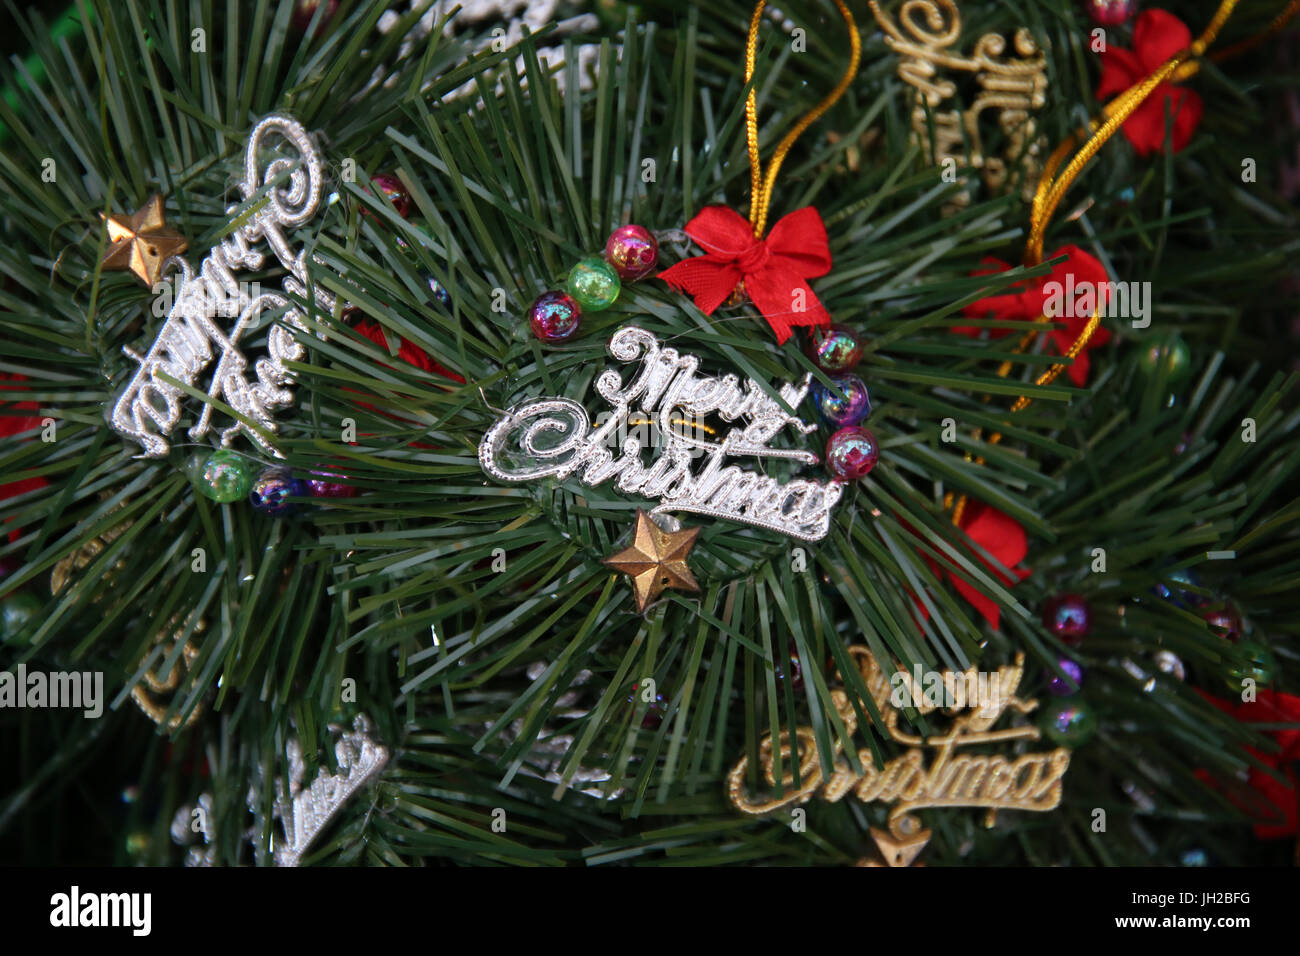 Decorated Christmas tree.  Vietnam. Stock Photo